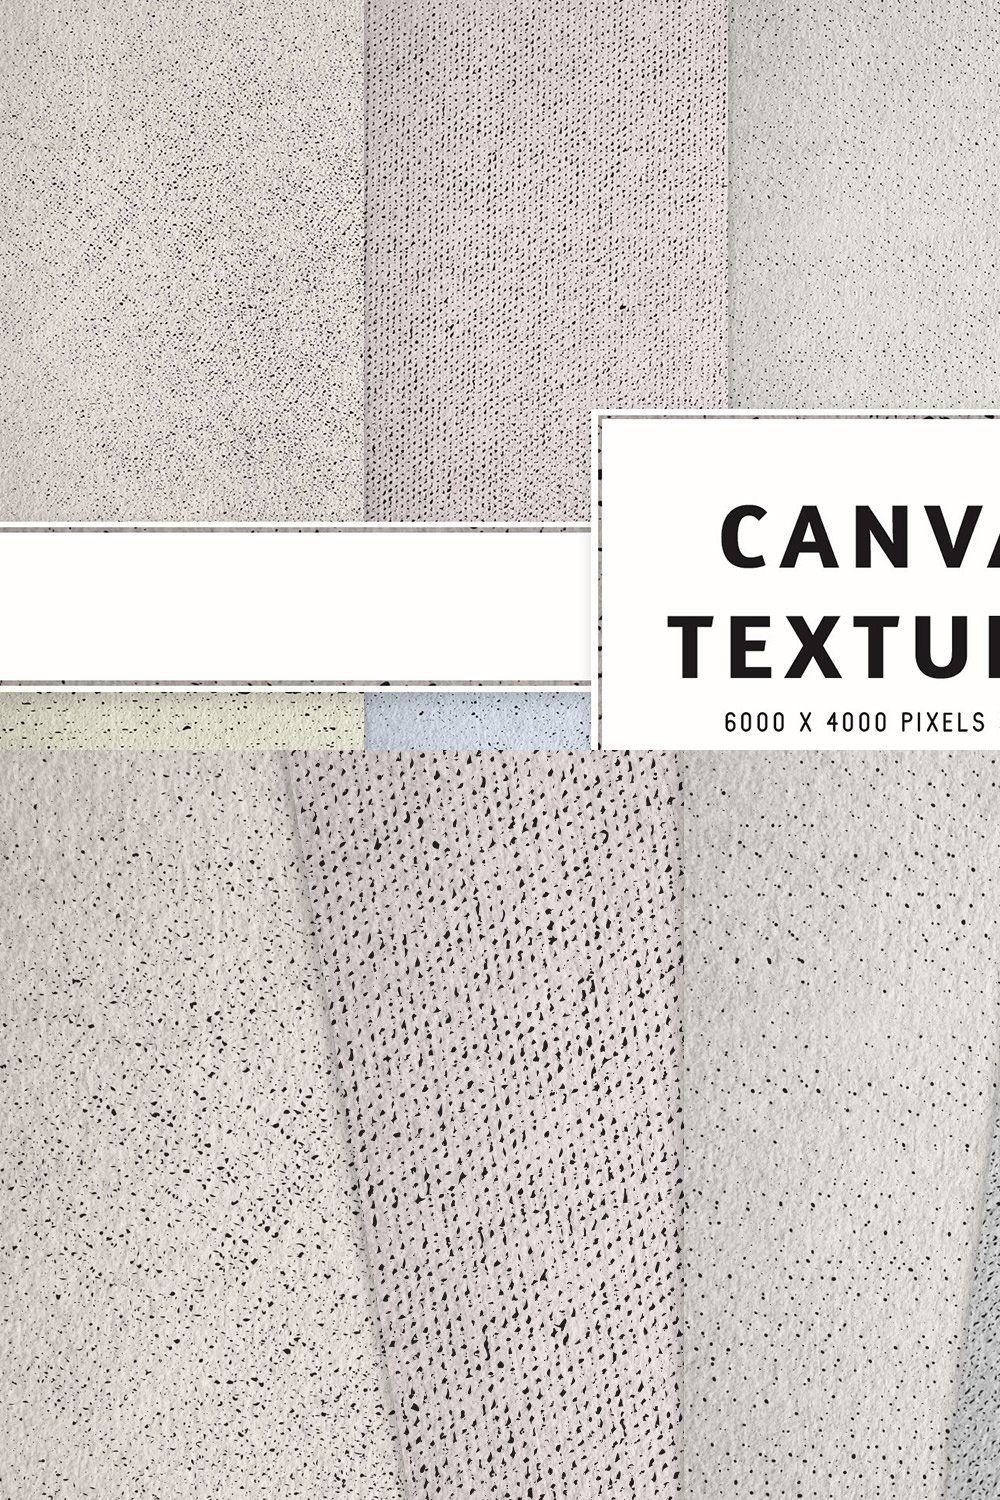 Canvas Textures pinterest preview image.